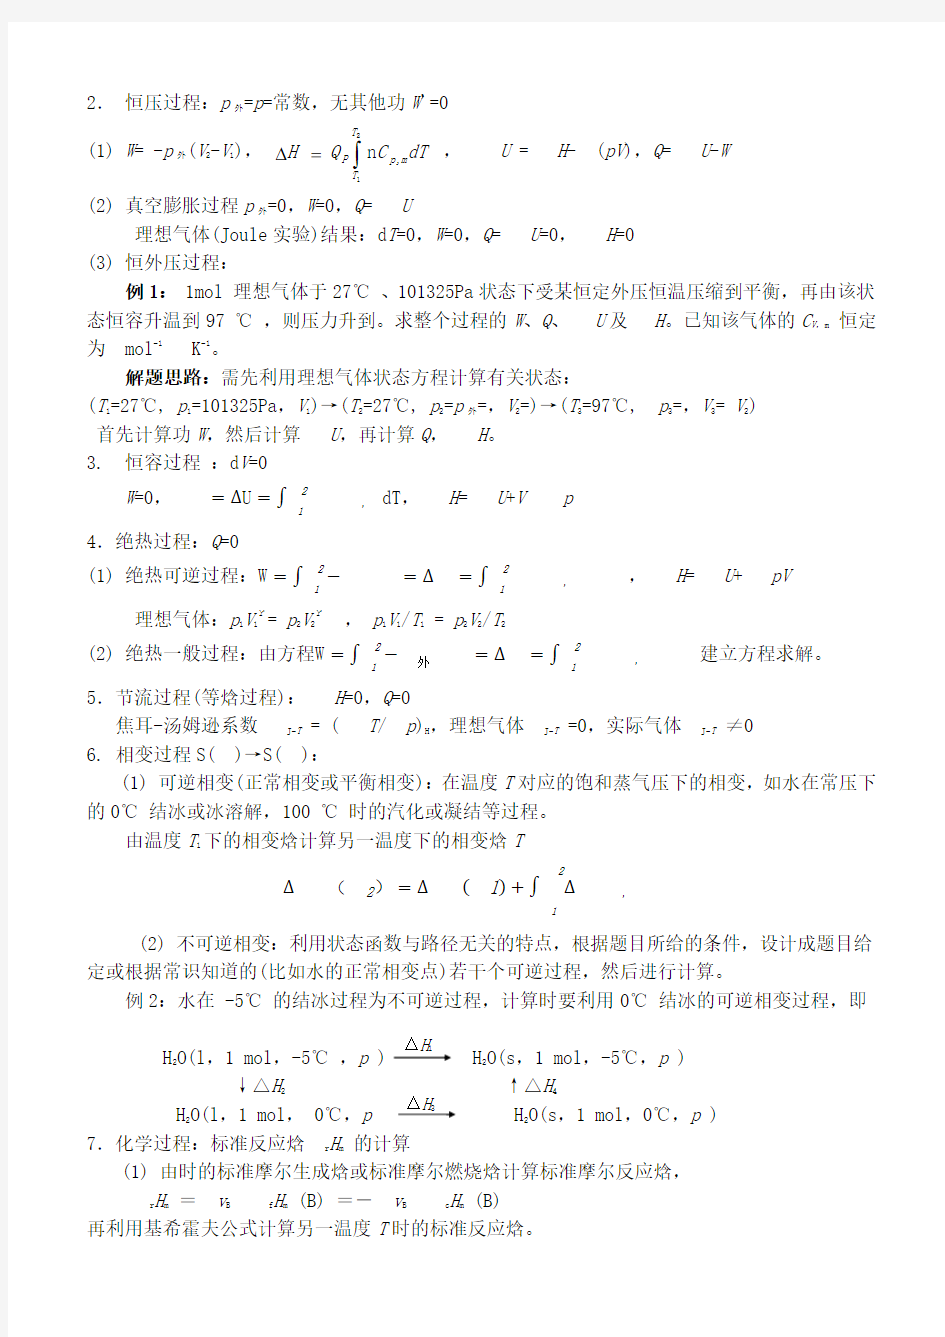 华南理工大学物理化学物理化学复习纲要(完整整理版)